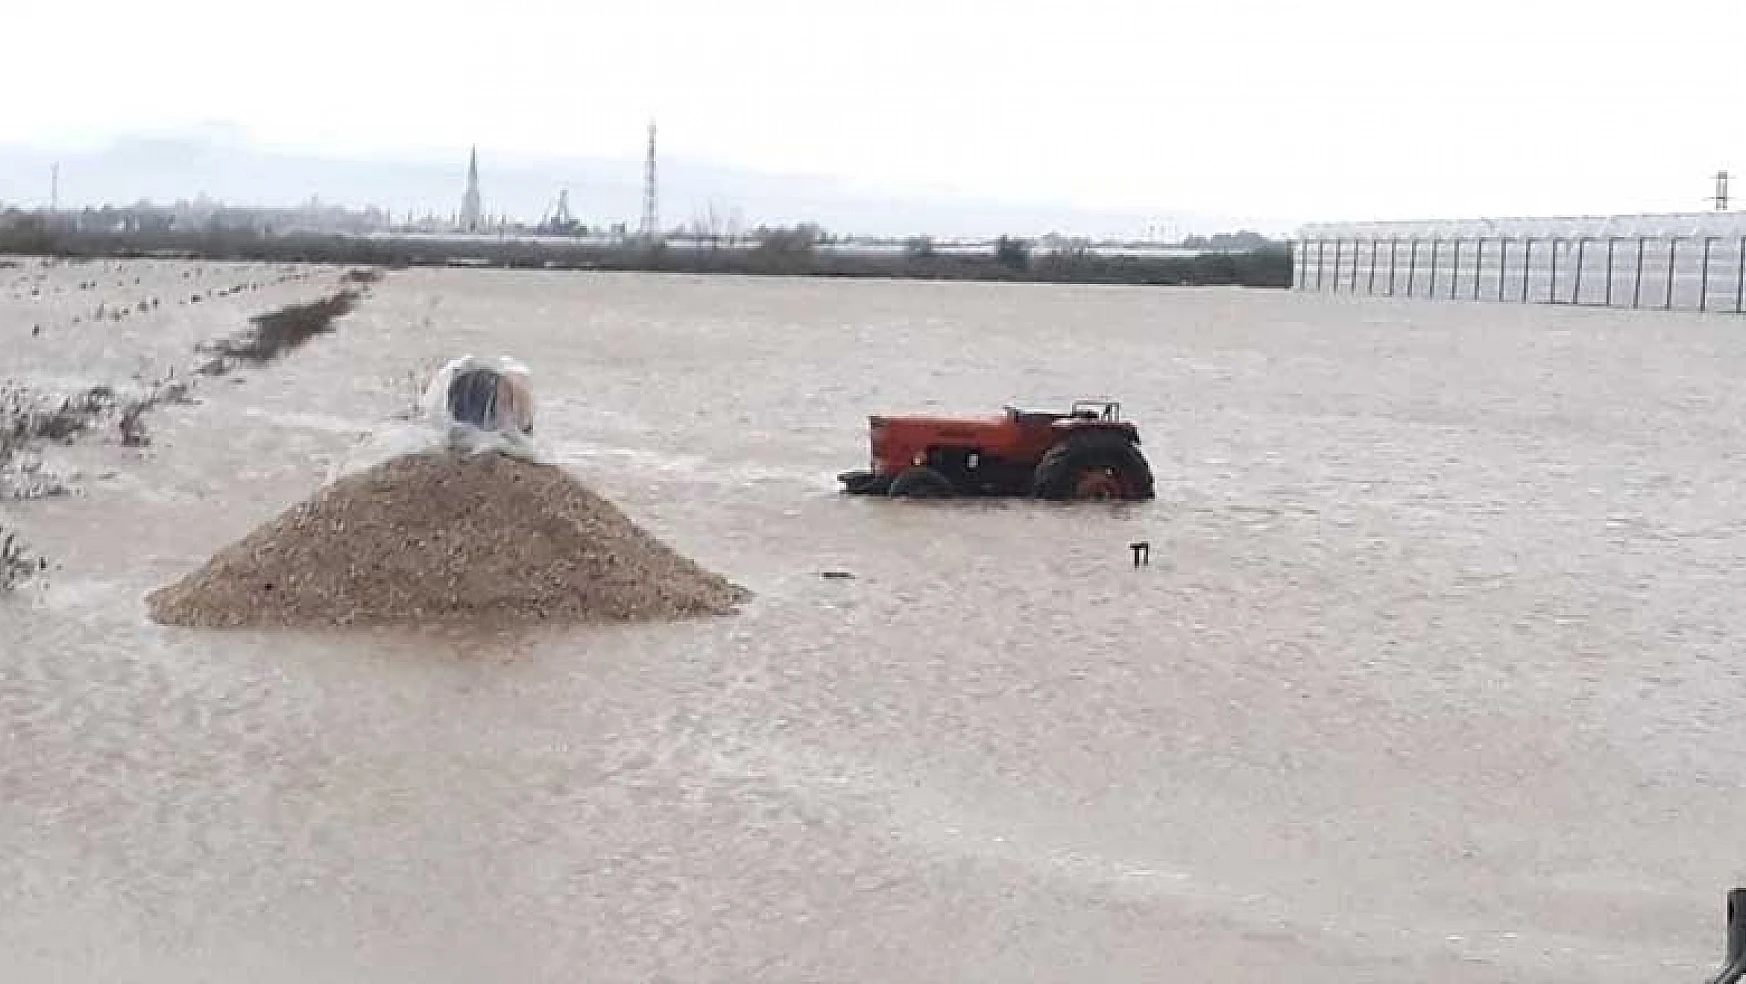 Turuncu kod Antalya'da tarım alanlarını sular altında bıraktı! Risk devam ediyor